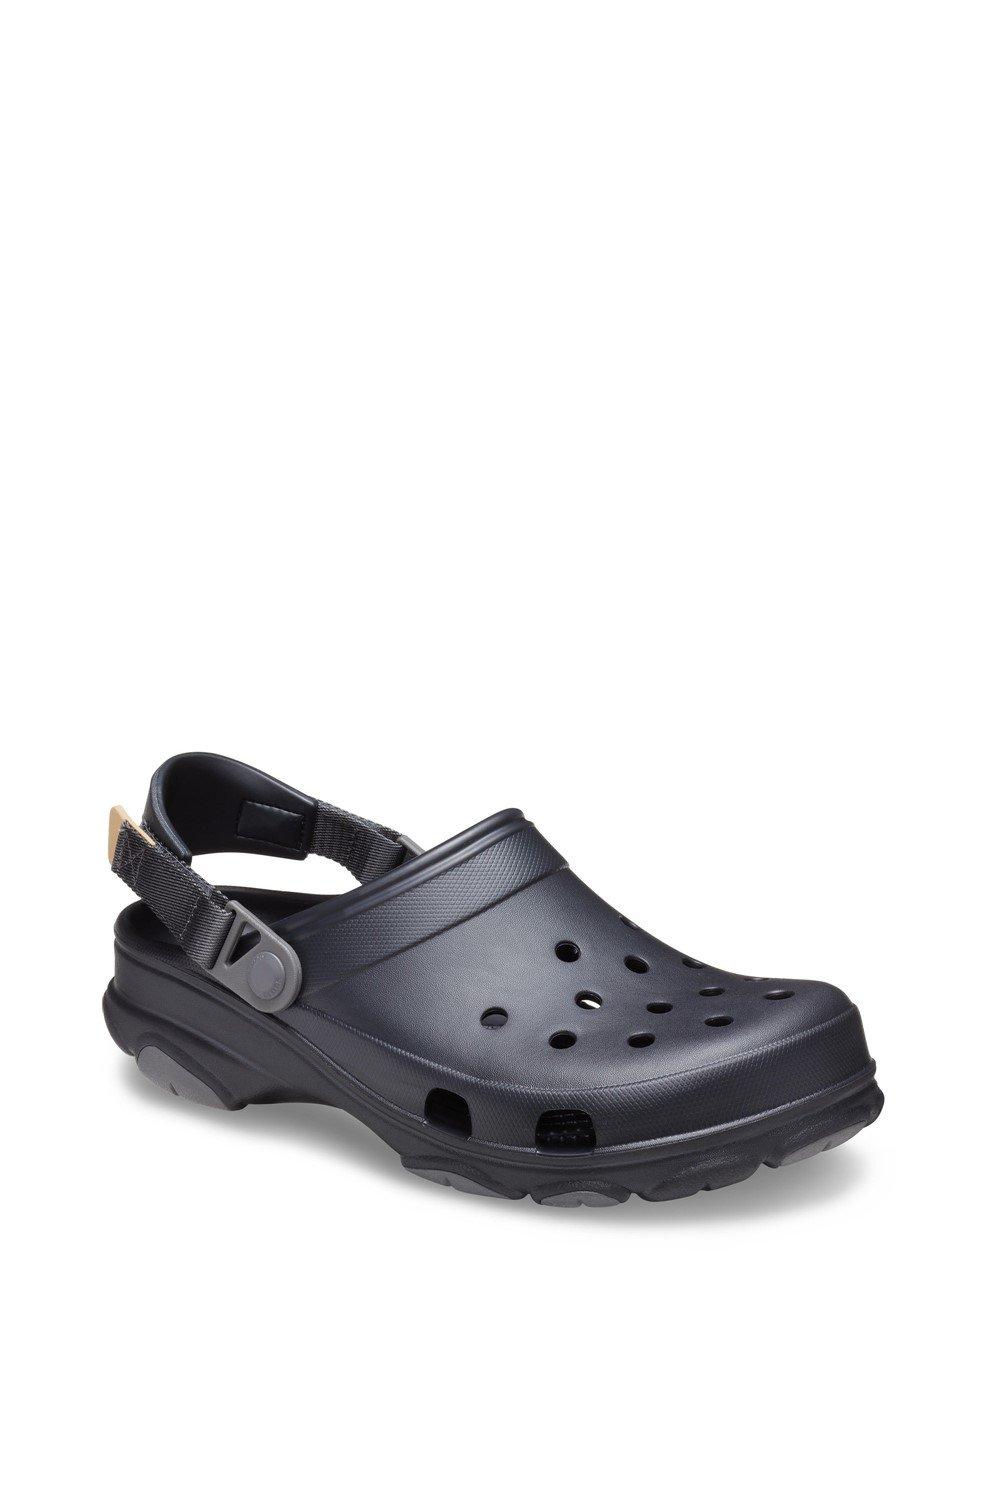 Классические универсальные туфли-слипоны Crocs, черный туфли слипоны из термопластика бистро crocs черный